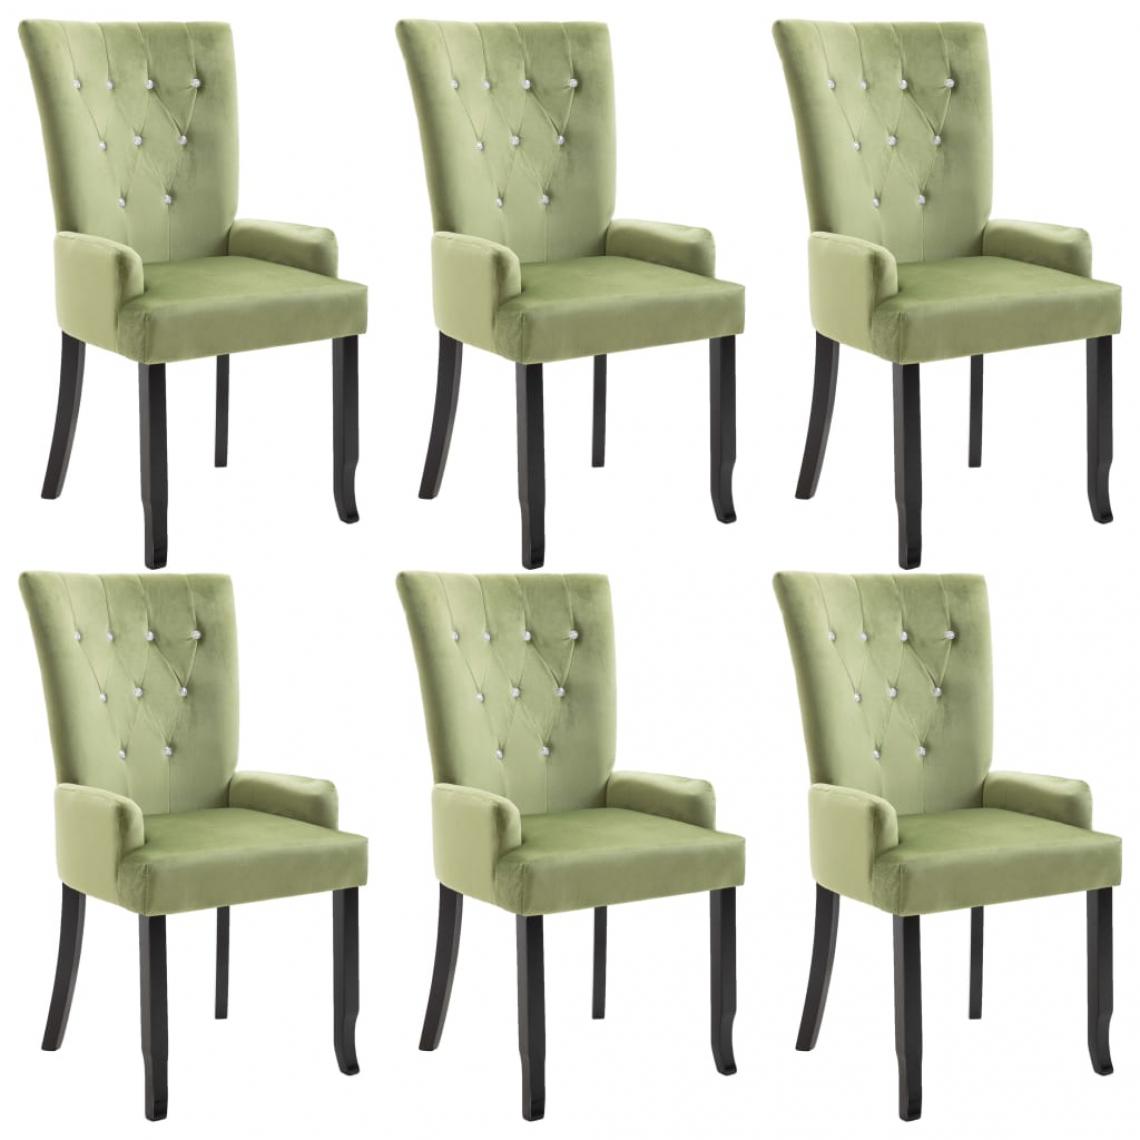 Decoshop26 - Lot de 6 chaises de salle à manger cuisine design classique velours vert clair CDS022880 - Chaises